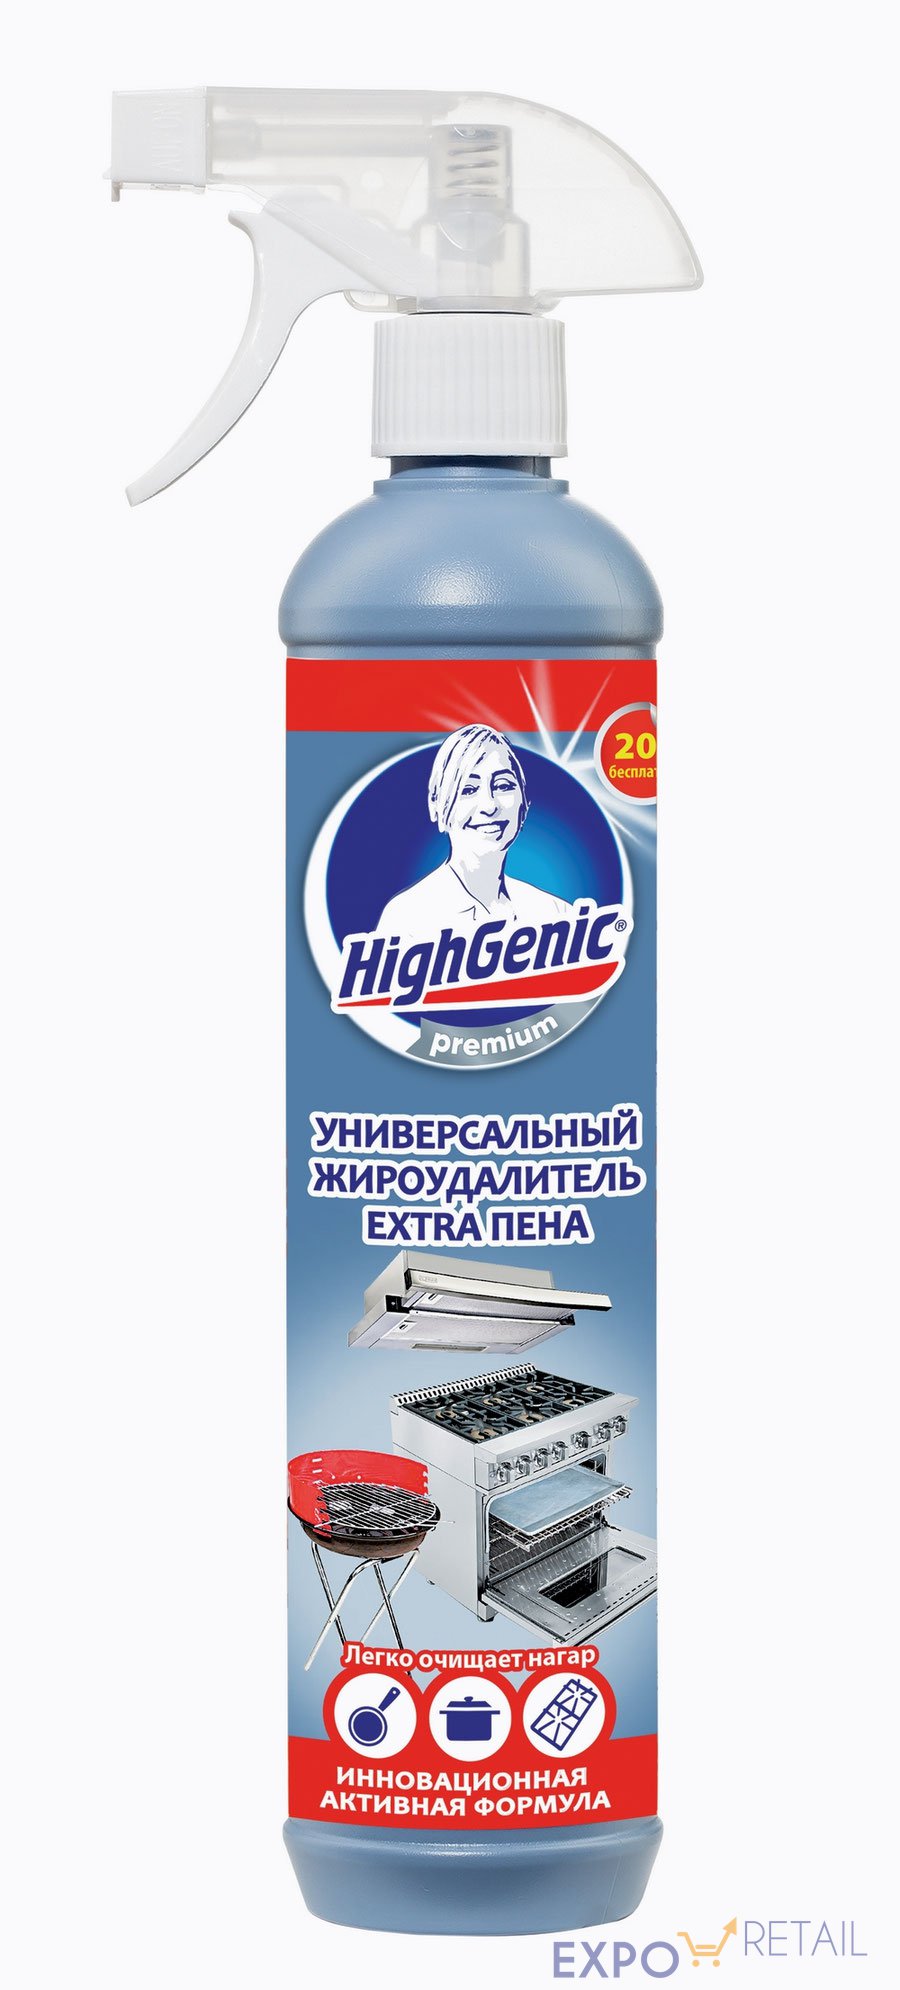 HighGenic Premium Универсальный жироудалитель Extra пена